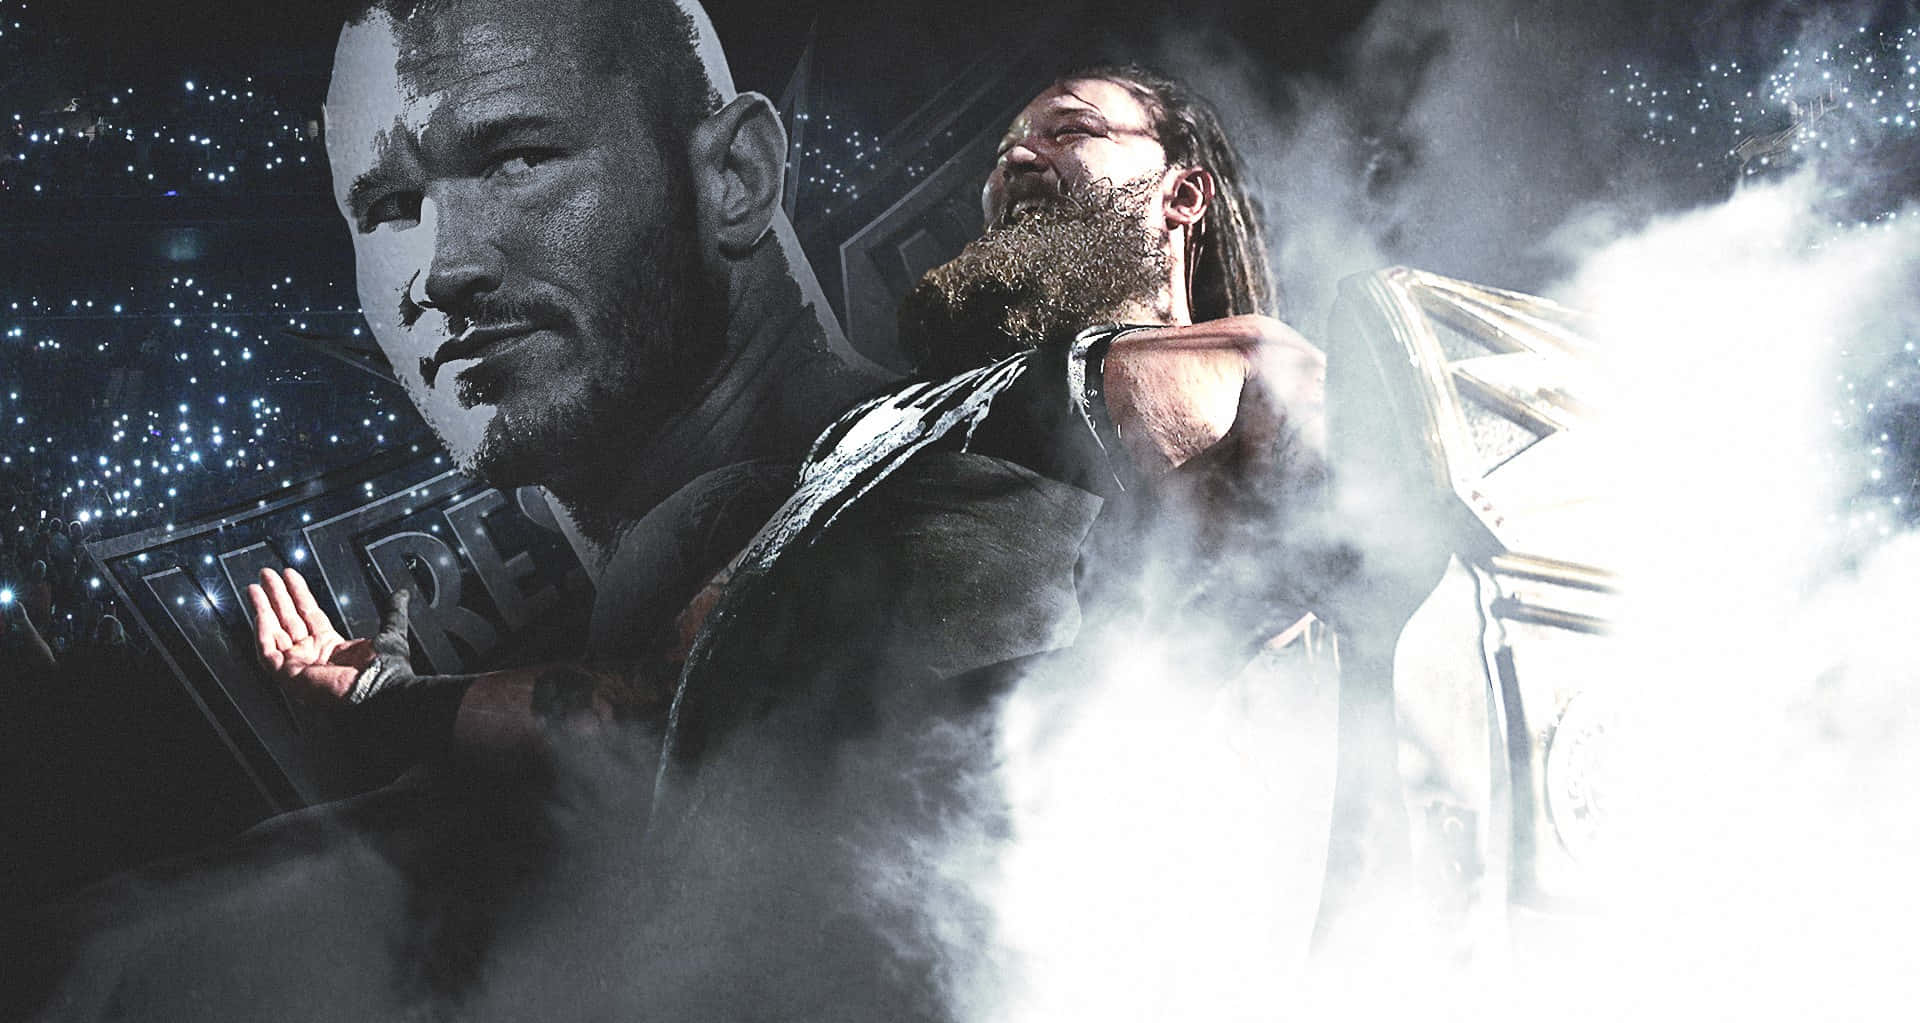 Bray Wyatt Randy Orton WWE Wrestlers Wallpaper: Bray Wyatt Randy Orton WWE Wrestlers Wallpaper: Wallpaper